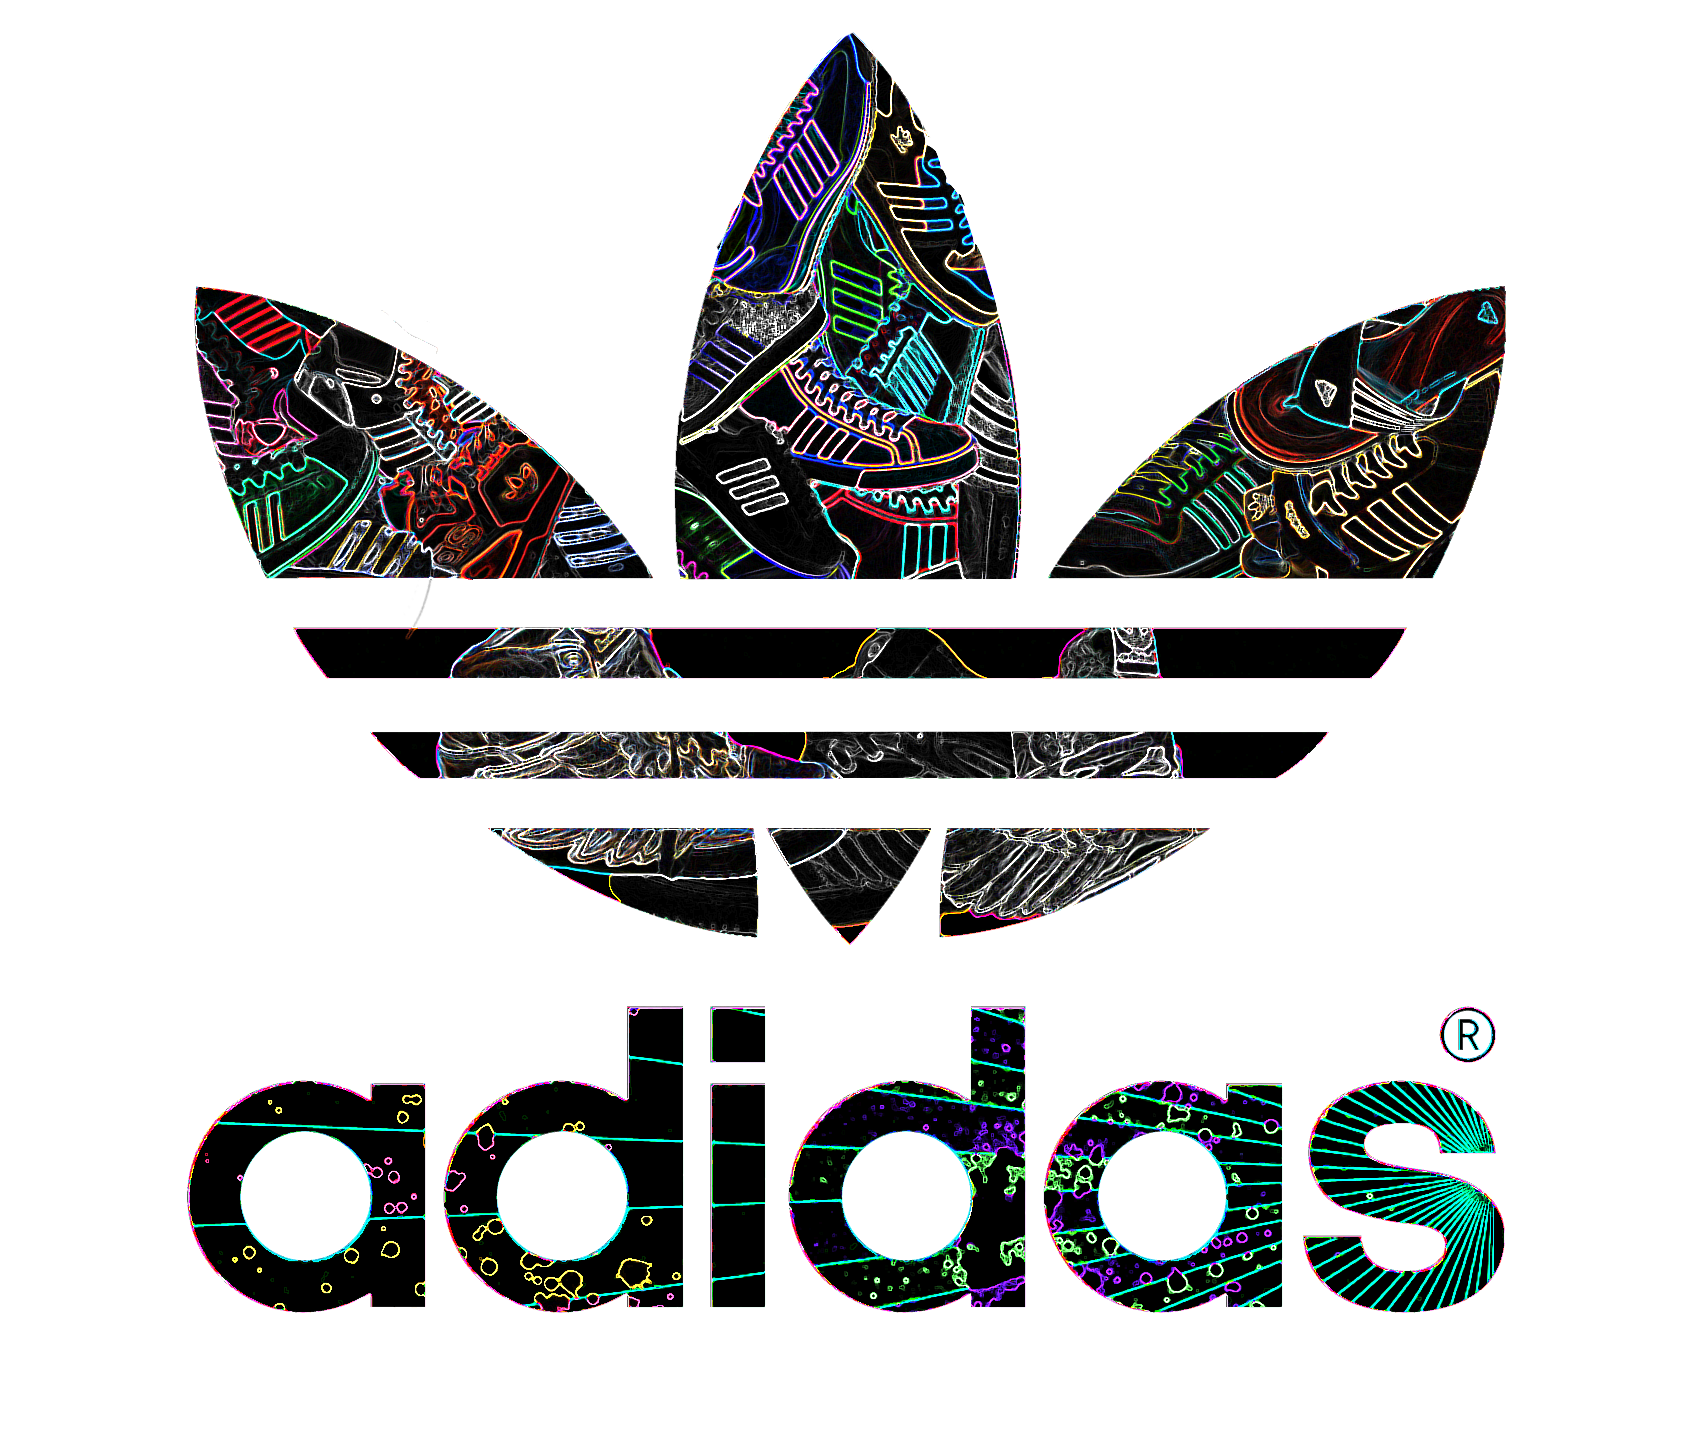 Картинки адидаса из слова. Адидас Ориджиналс лого. Adidas Originals logo vector. Adidas logo 2019. Adidas logo 2002.